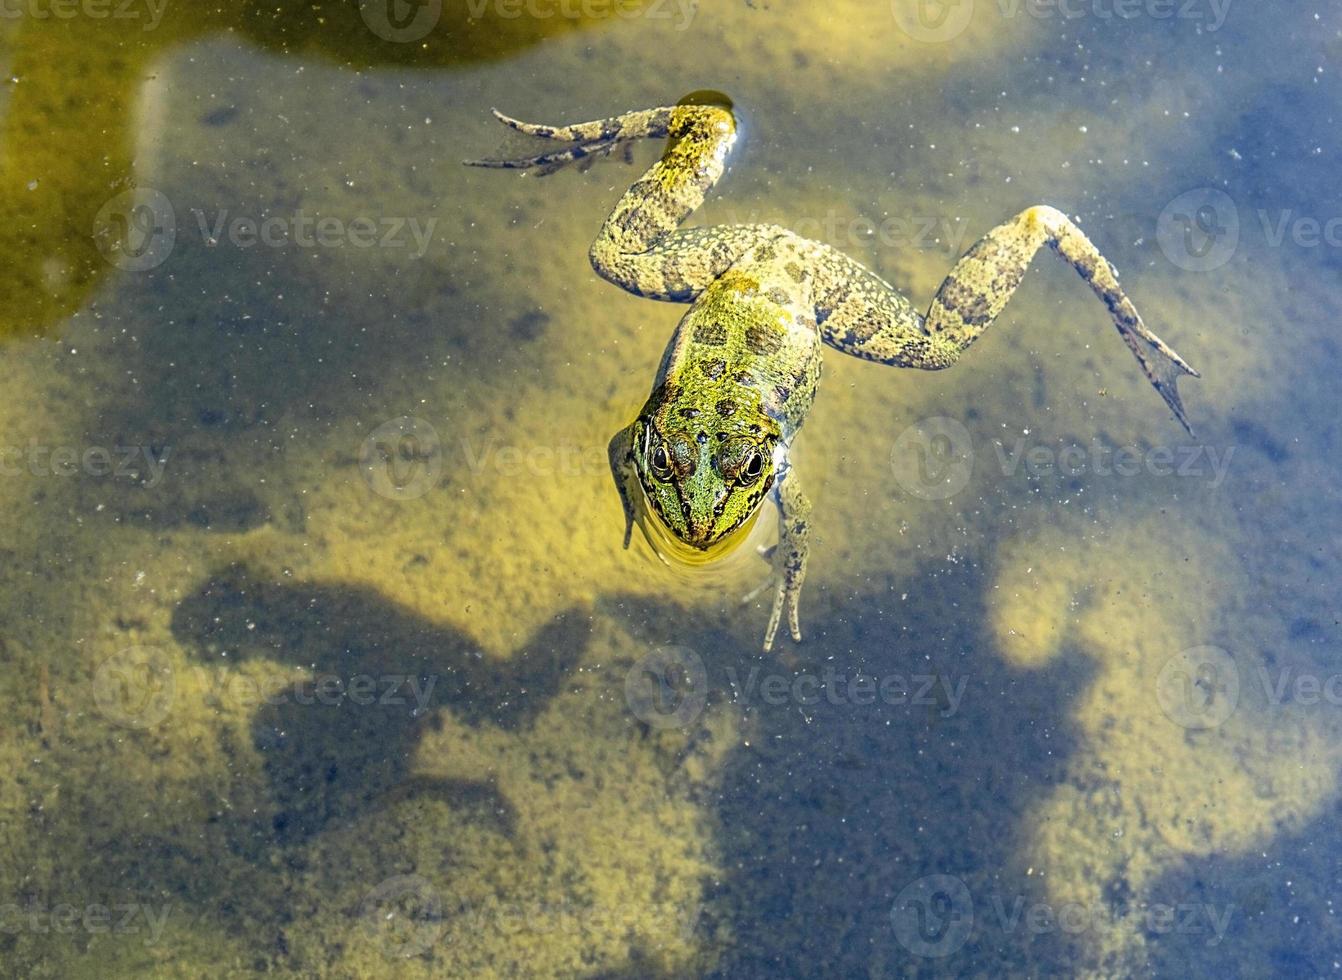 primer plano de rana verde nadando en el agua fangosa del estanque. pelophylax esculentus. anfibio foto